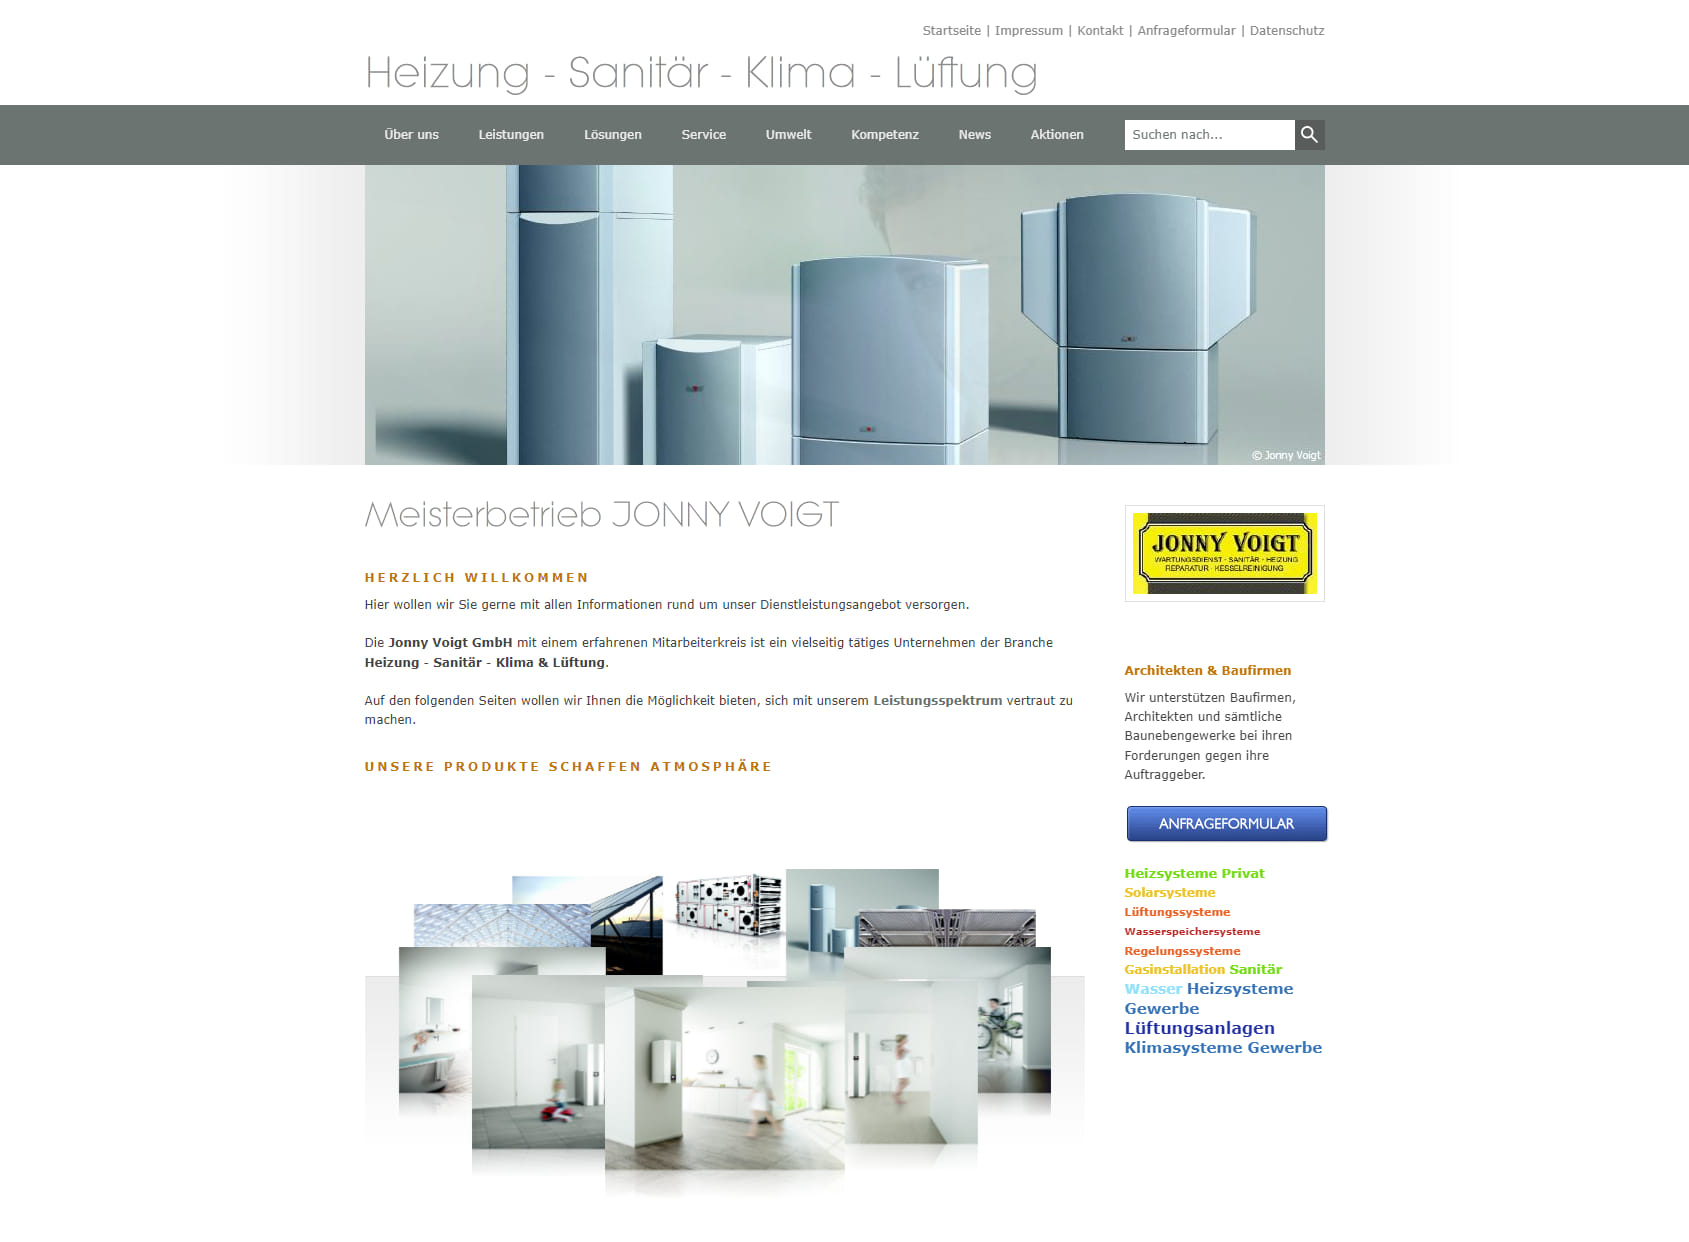 Jonny Voigt GmbH Sanitär und Heizung